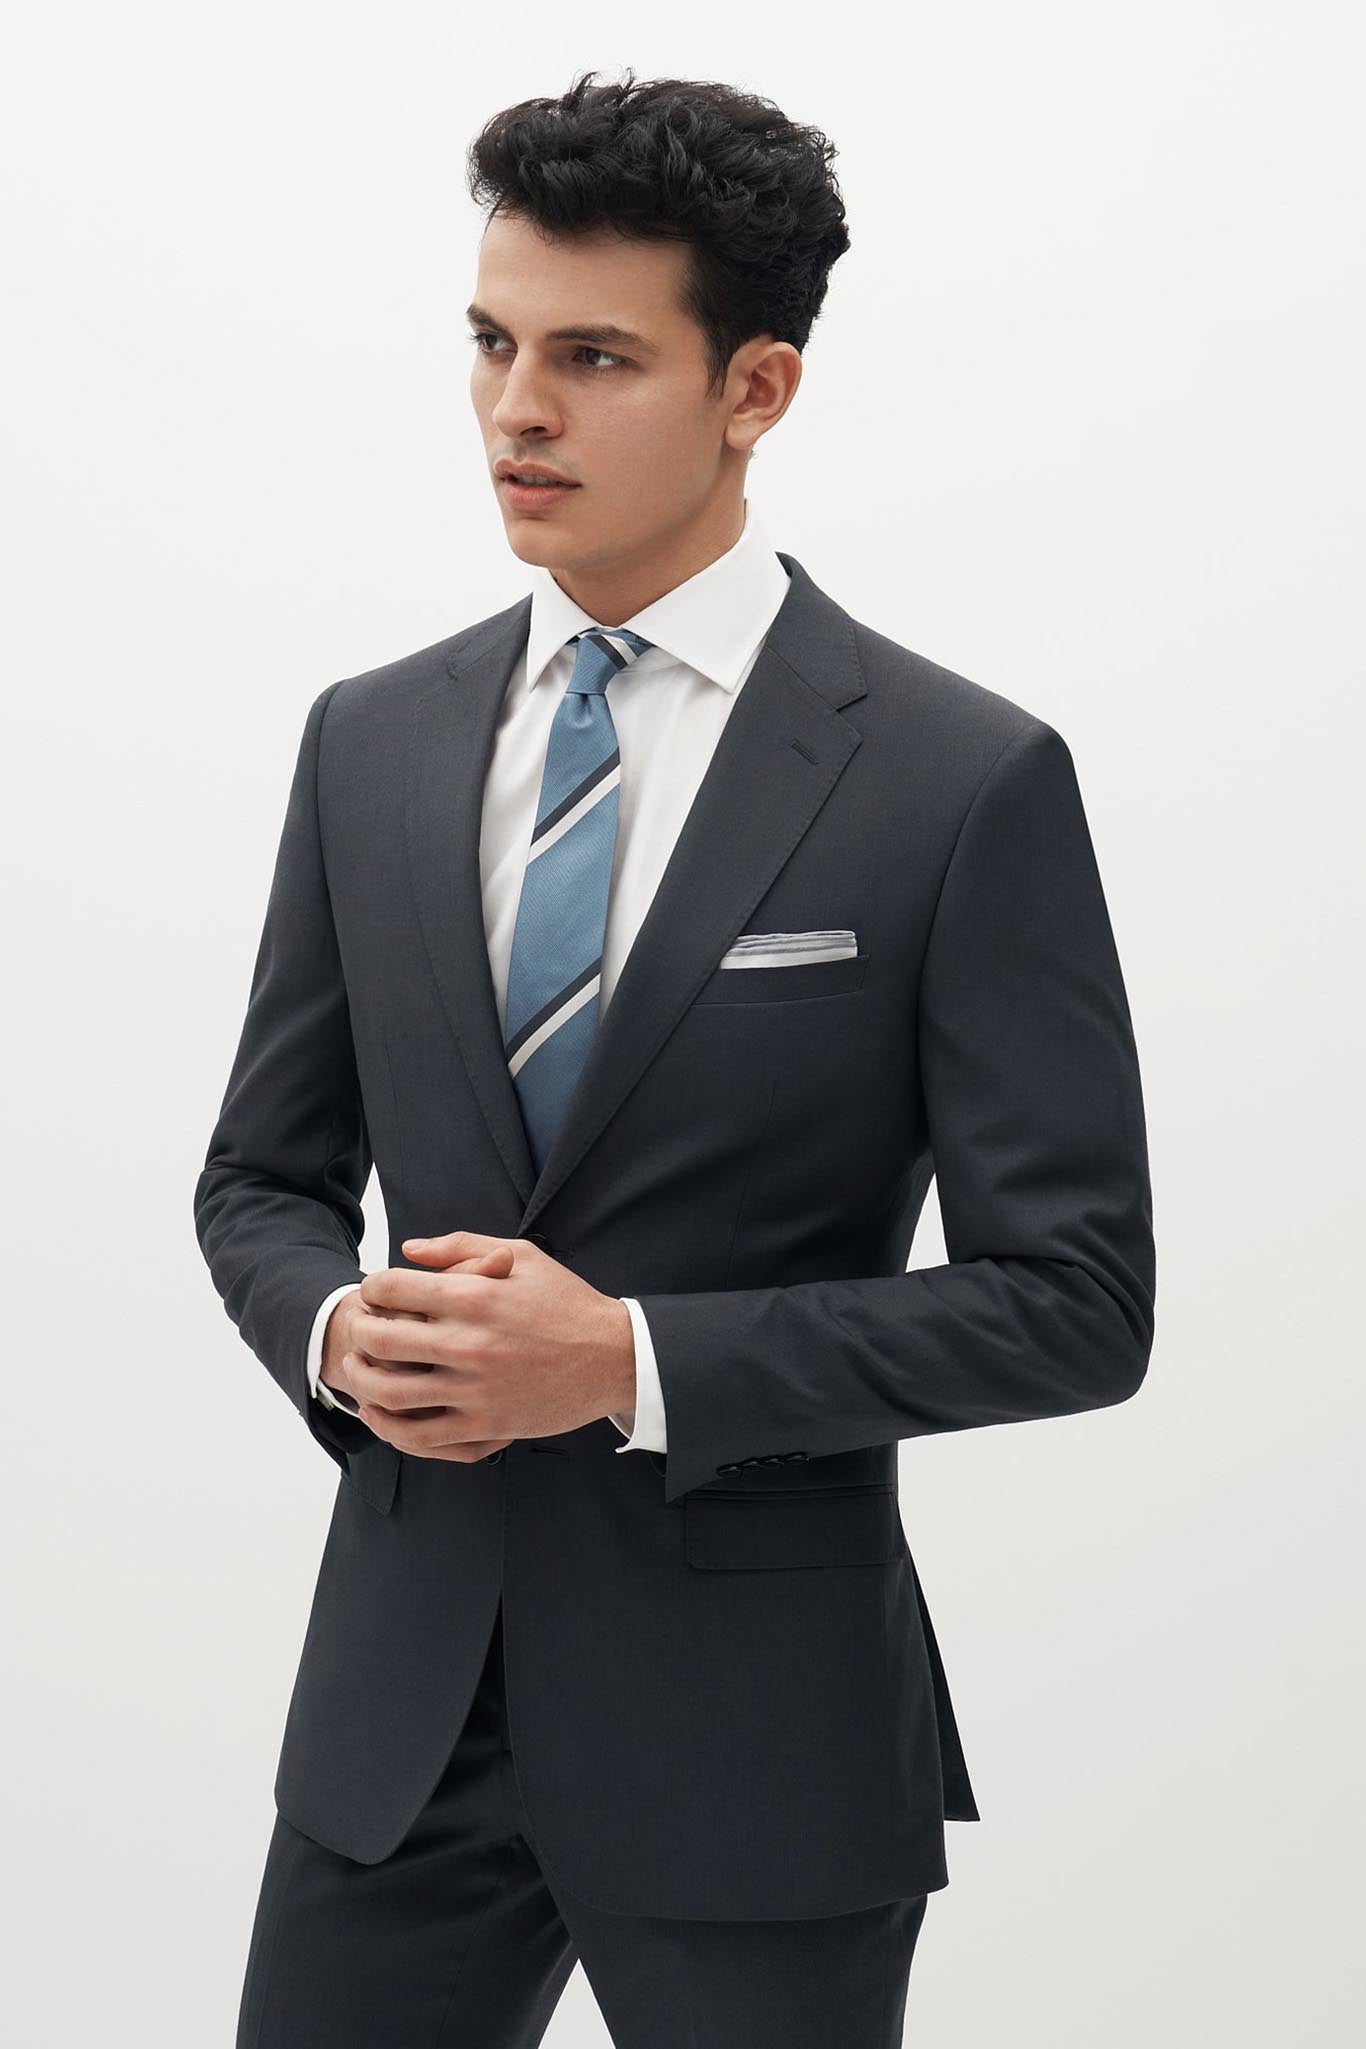 Men's Charcoal Grey 3 Piece Tweed Herringbone Suit - STZ11: Buy Online -  Happy Gentleman United States